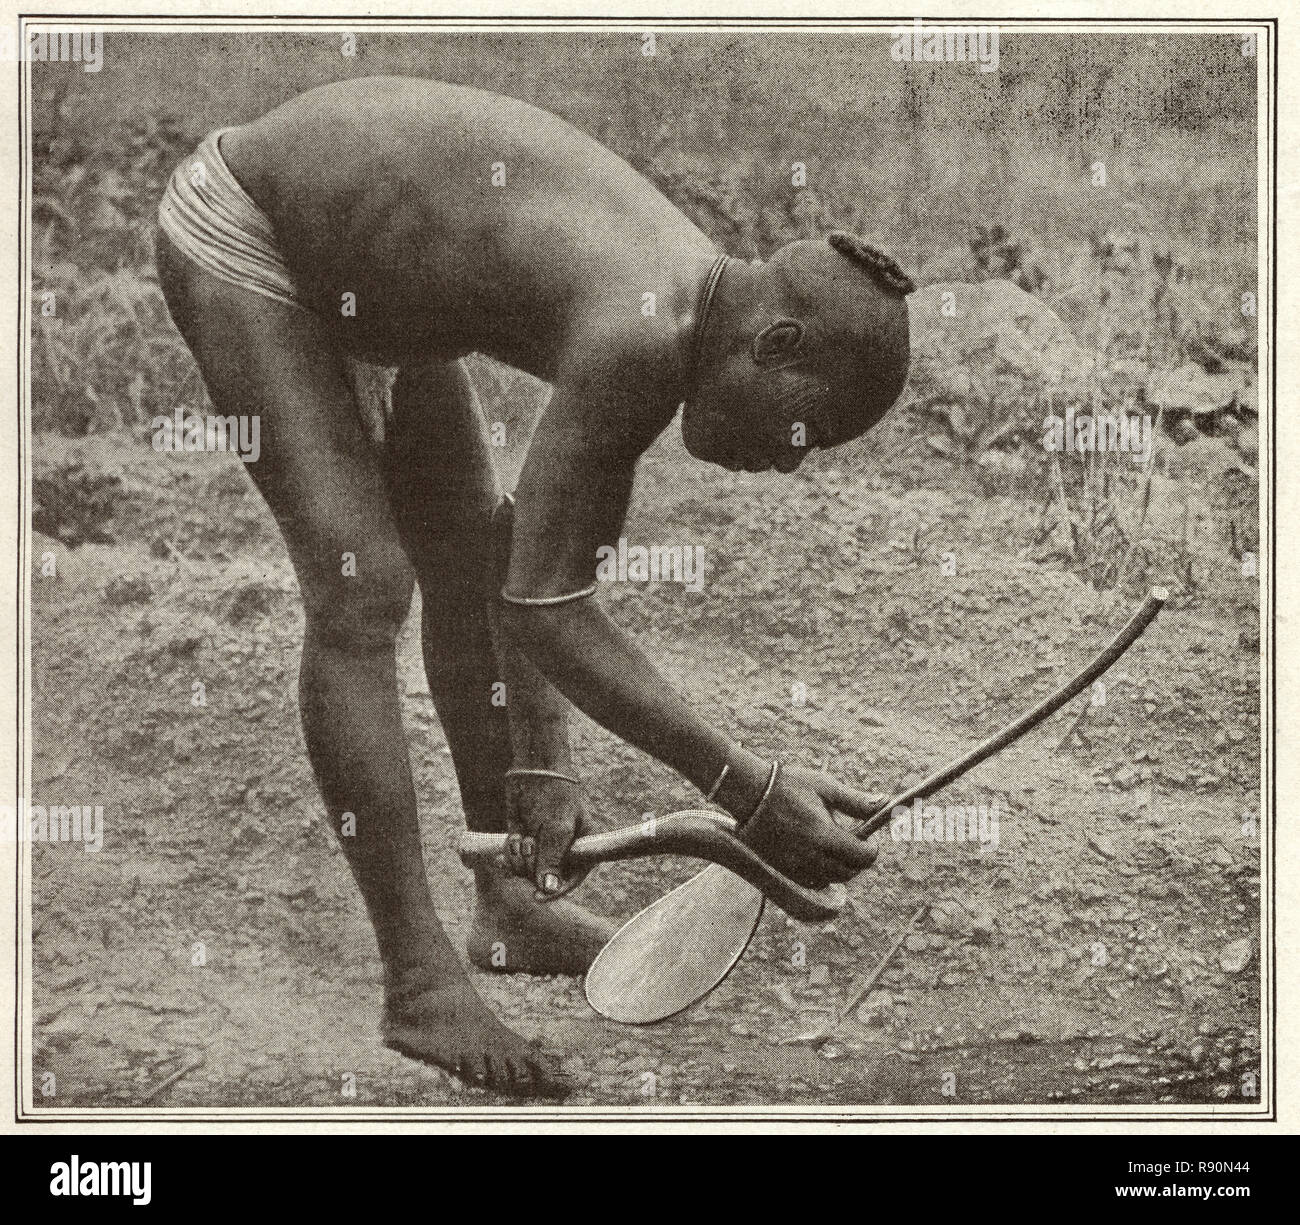 Fotografia vintage di antica agricoltura, un uomo di utilizzando una primitiva hoe. La Nigeria, nei primi anni del XX secolo Foto Stock